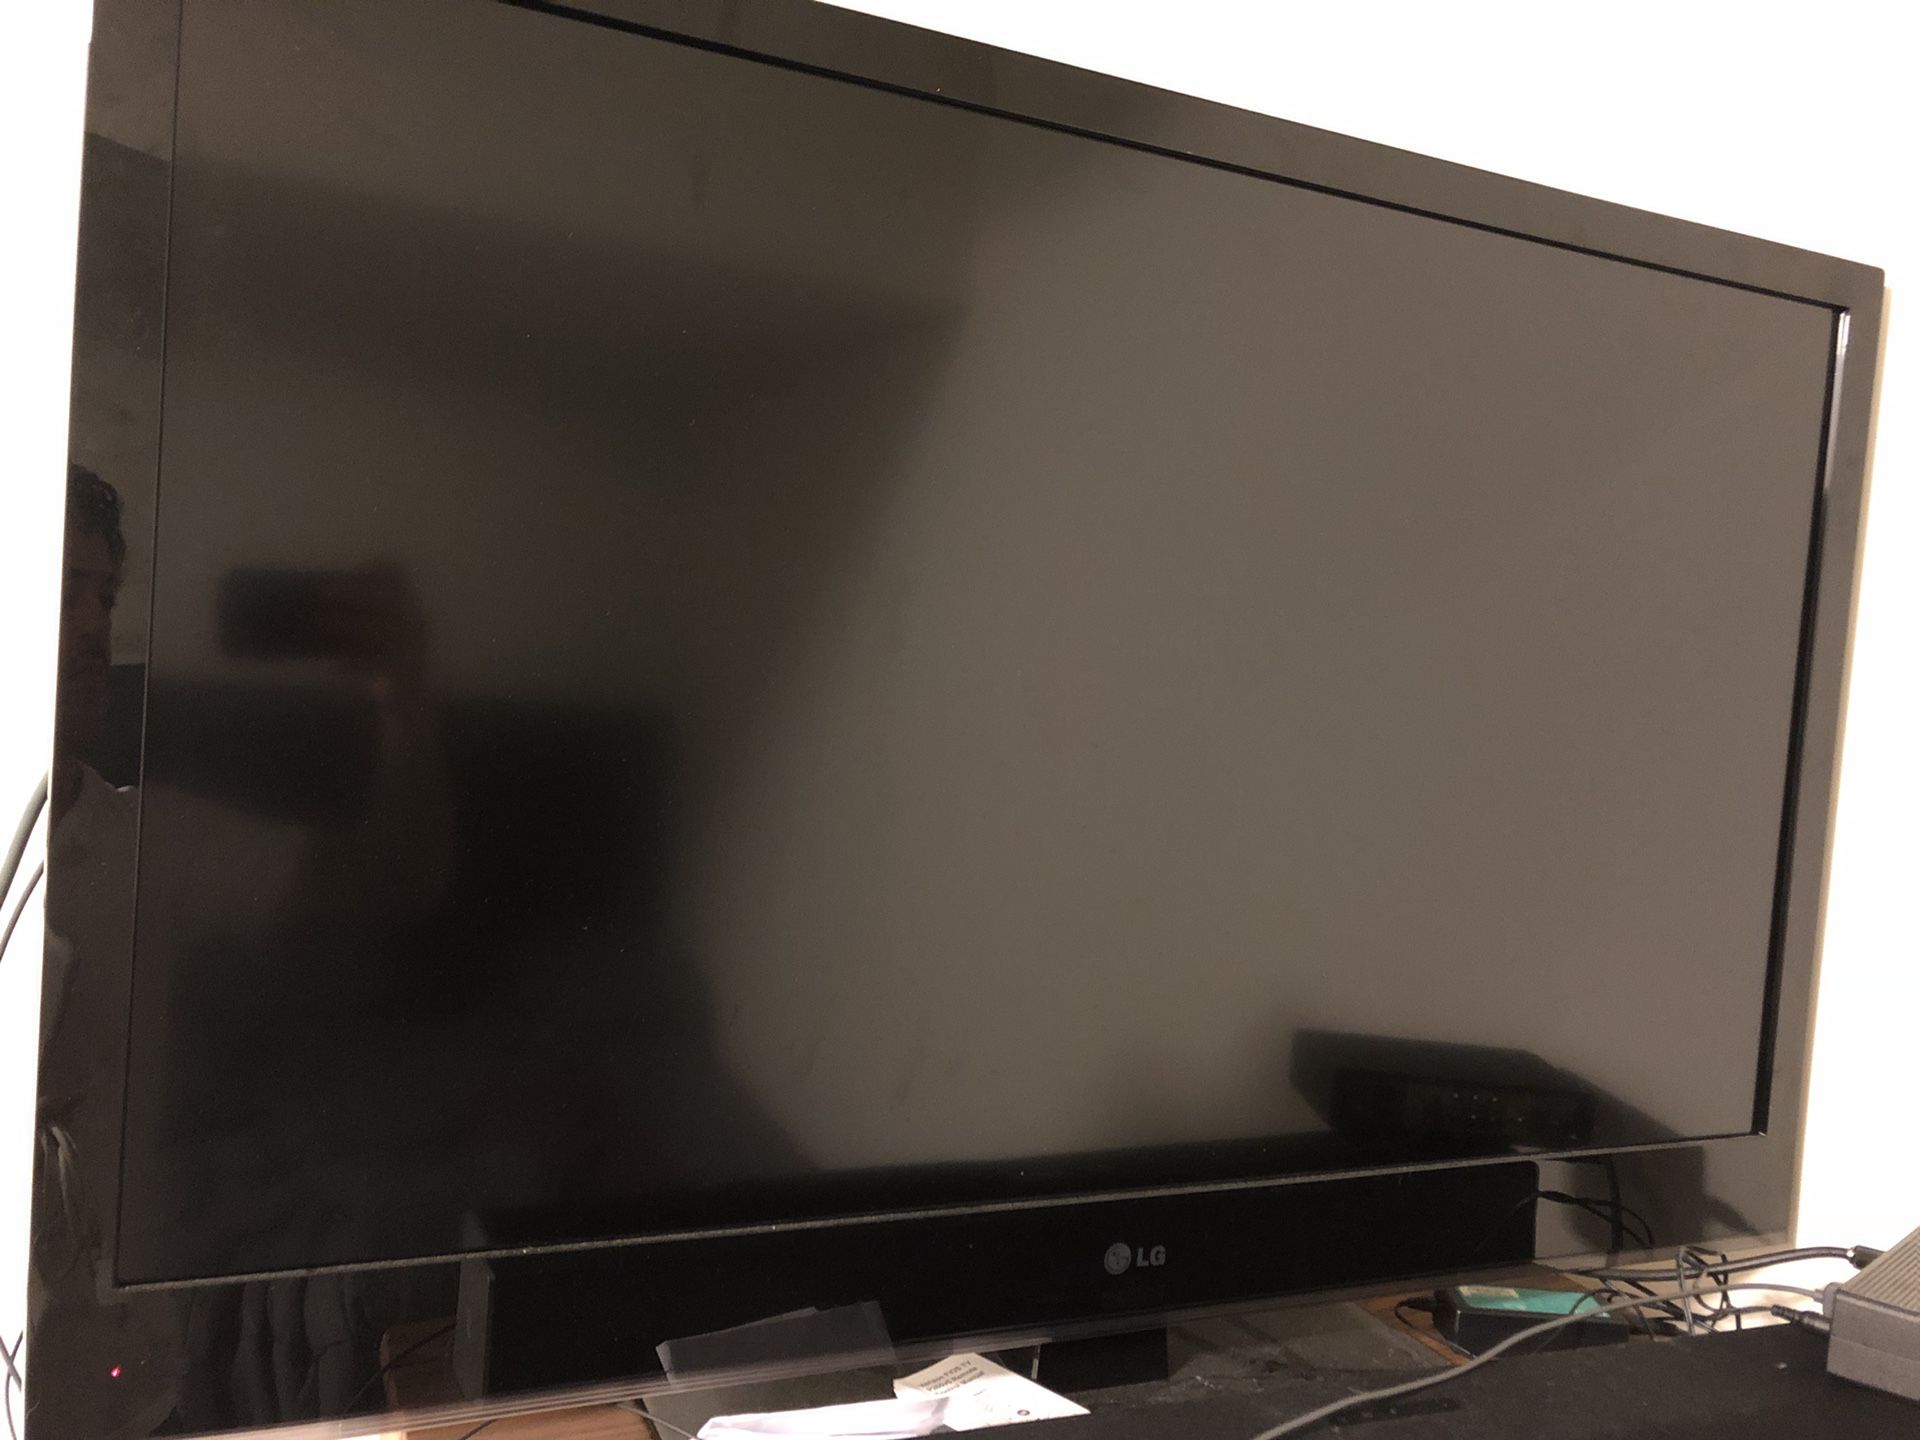 LG 42” FLAT SCREEN TV 1080p $150